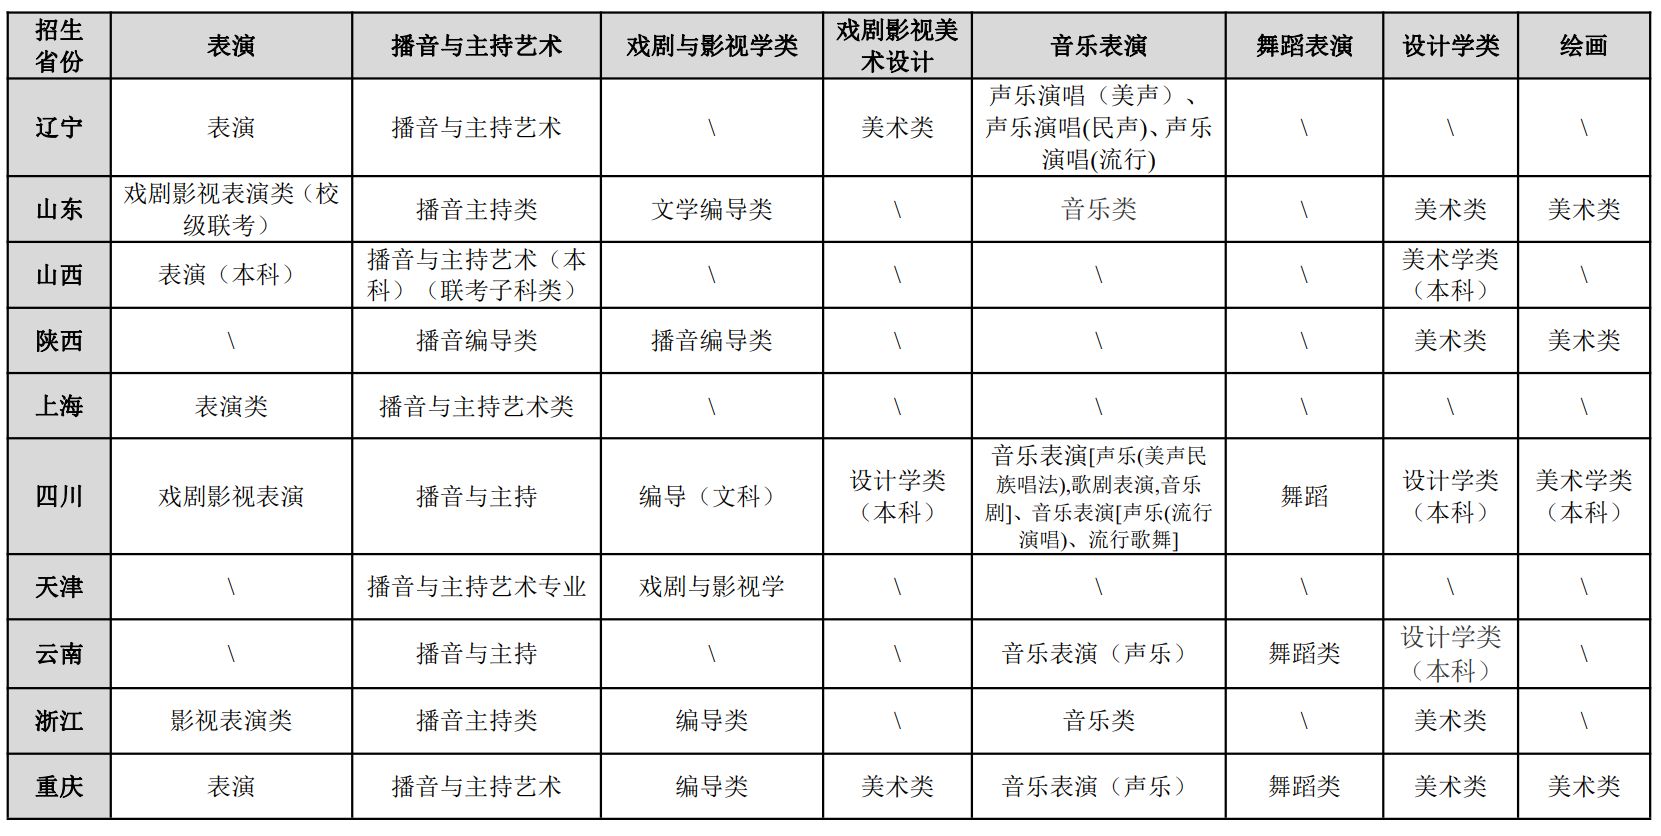 2022年重慶大學藝術類專業招生簡章、招生專業、省份及計劃、身高要求